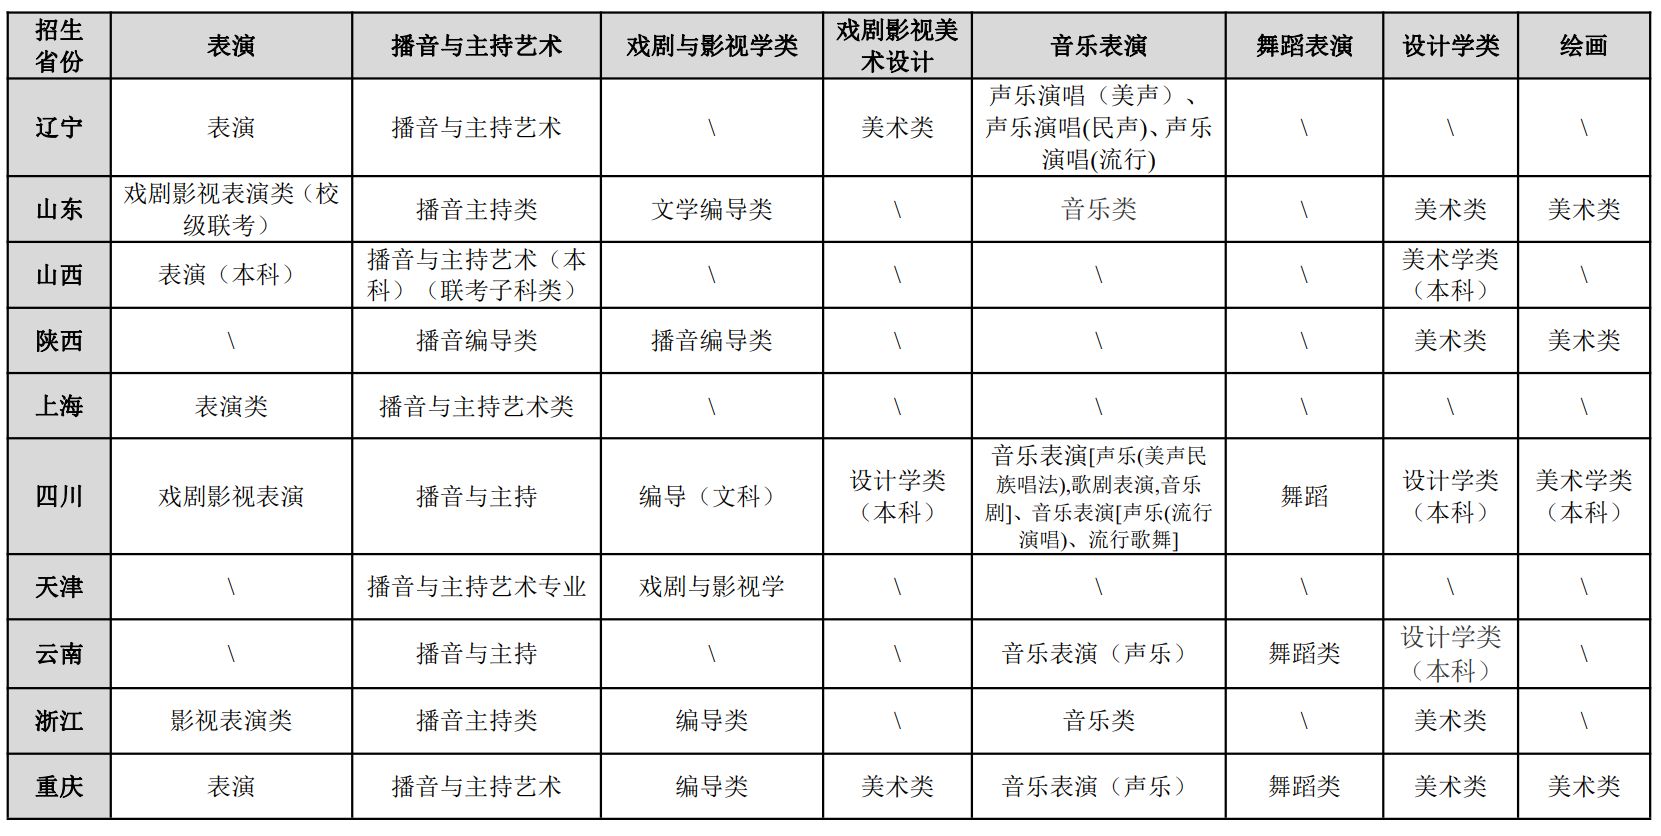 2022年重慶大學藝術類專業招生簡章、招生專業、省份及計劃、身高要求